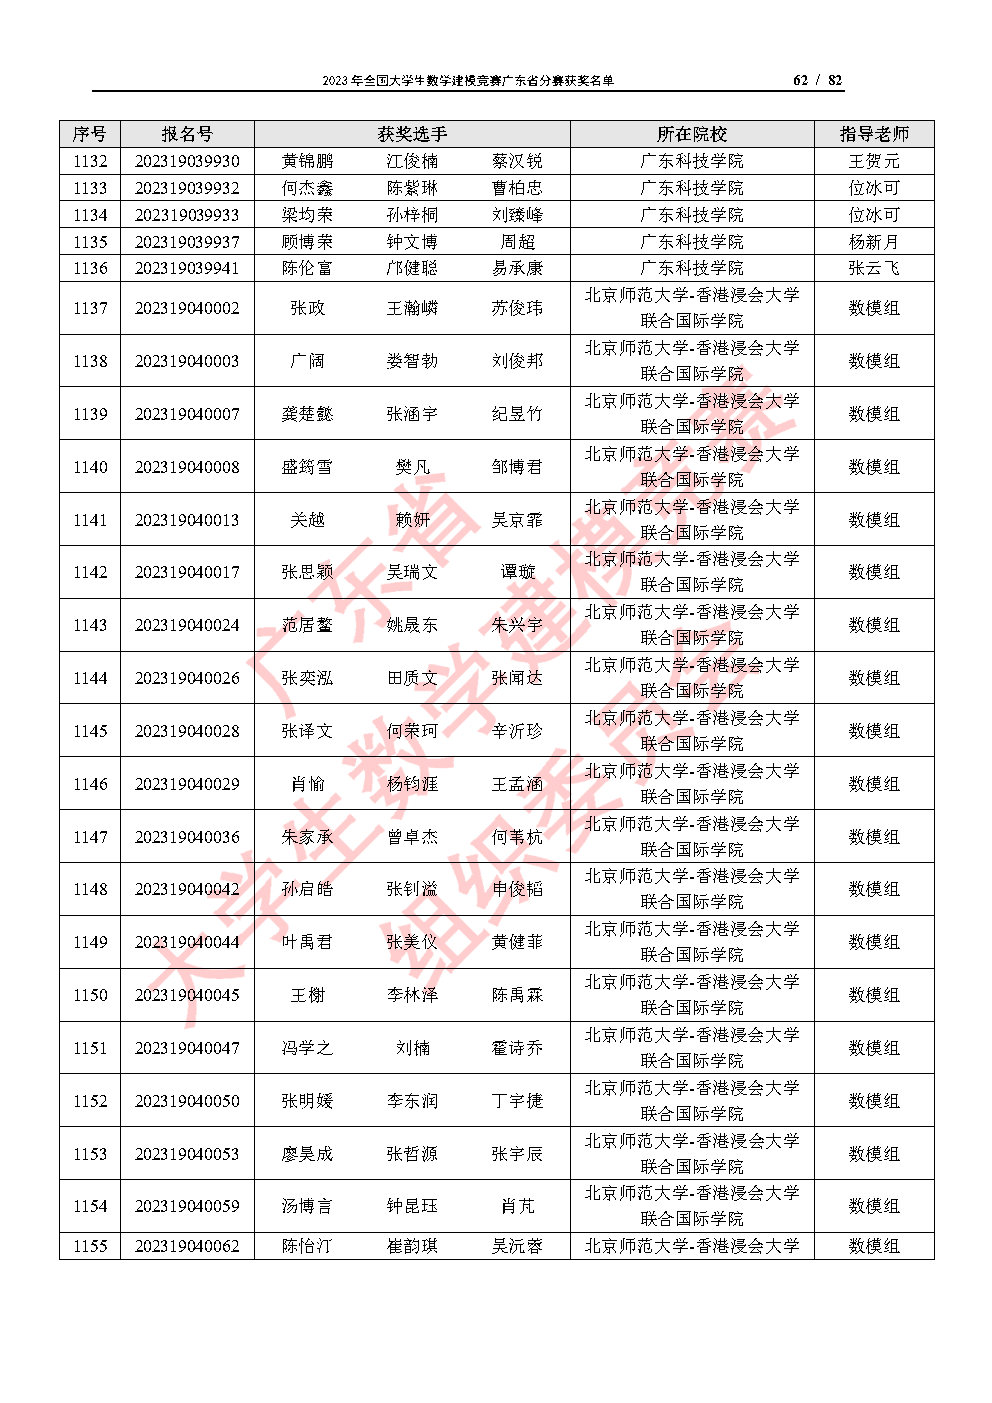 2023年全国大学生数学建模竞赛广东省分赛获奖名单_Page62.jpg